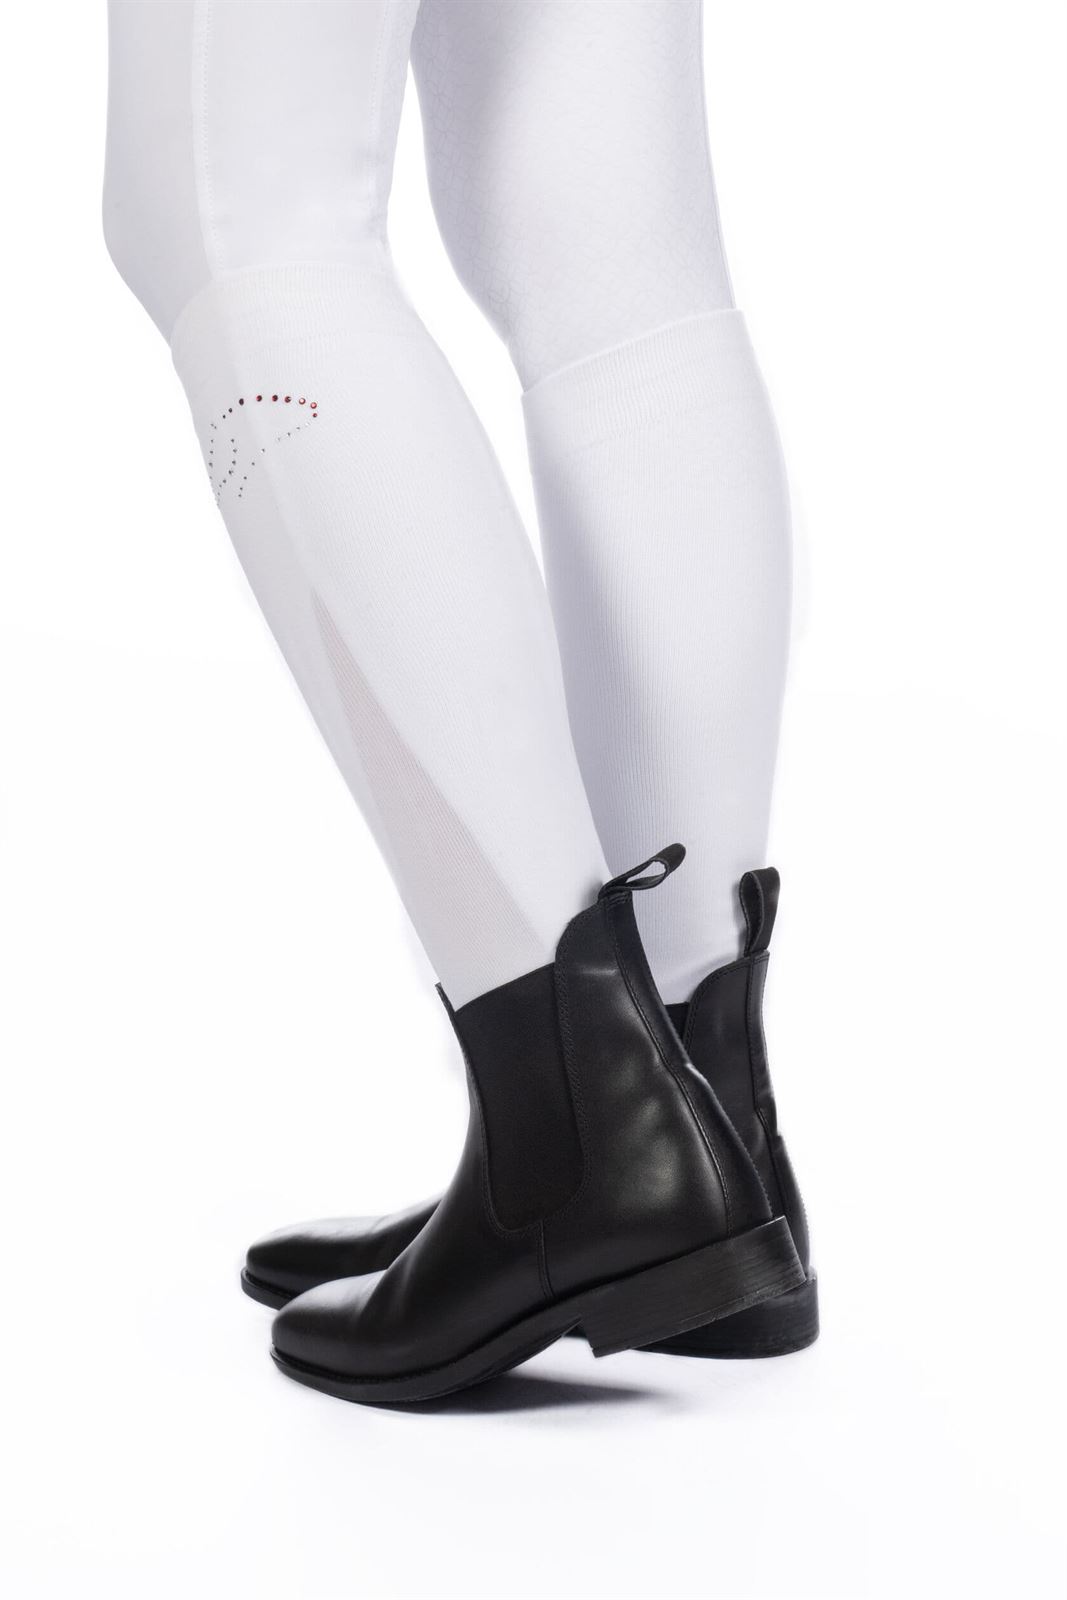 Calcetines finos HKM Sports Equipment color blanco con cristales TALLA 35/38 - Imagen 2